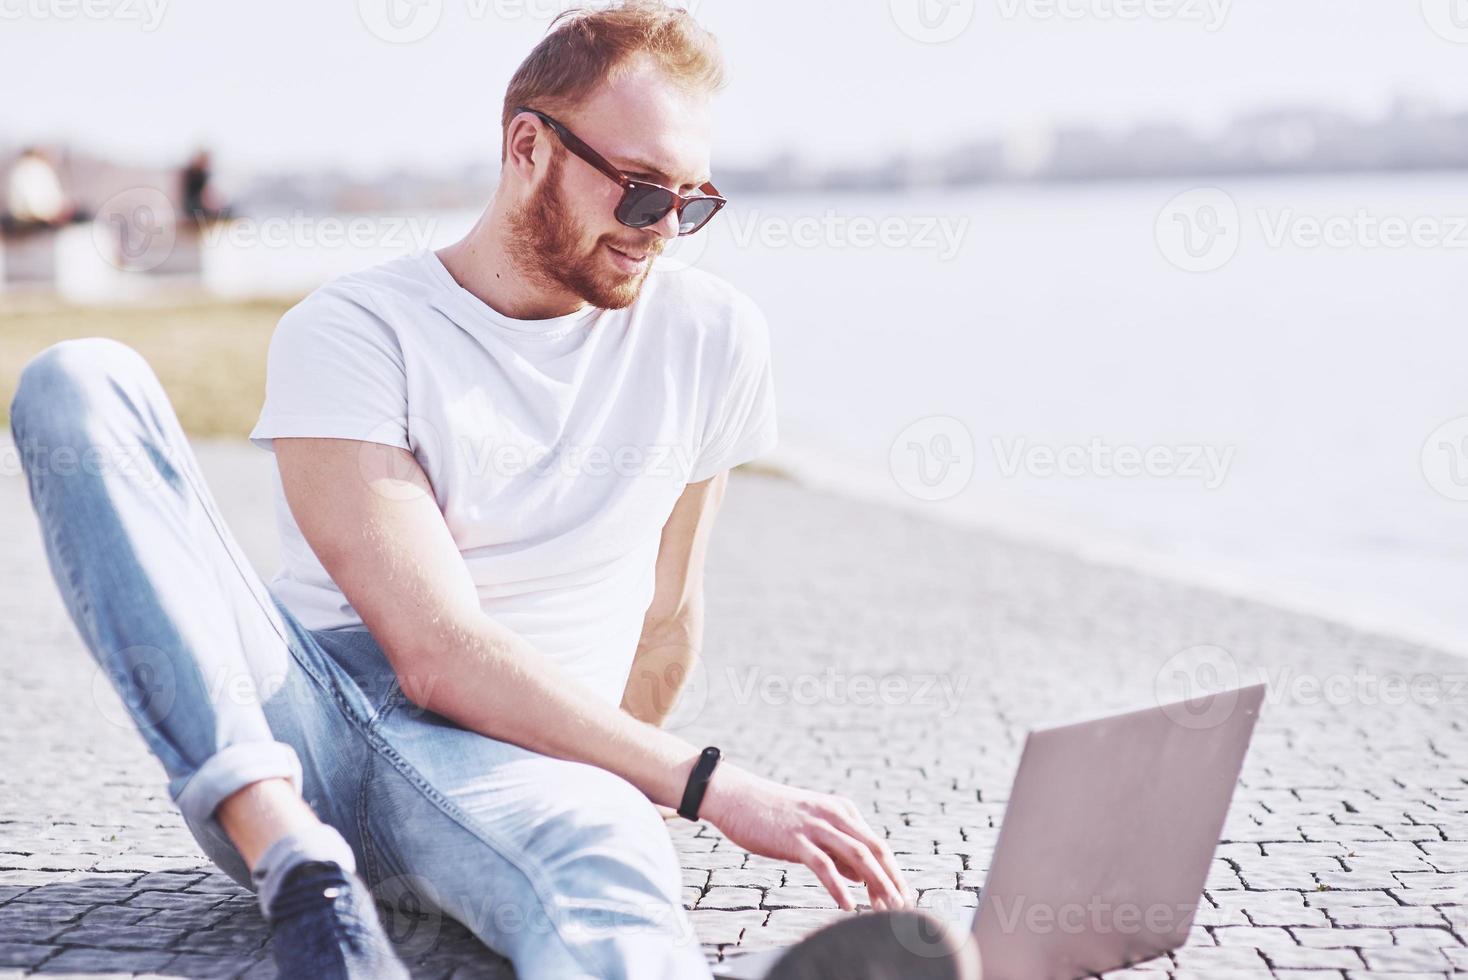 jeune homme assis avec un ordinateur portable à l'extérieur du bureau. étudiant apprenant en ligne. journée ensoleillée d'été photo